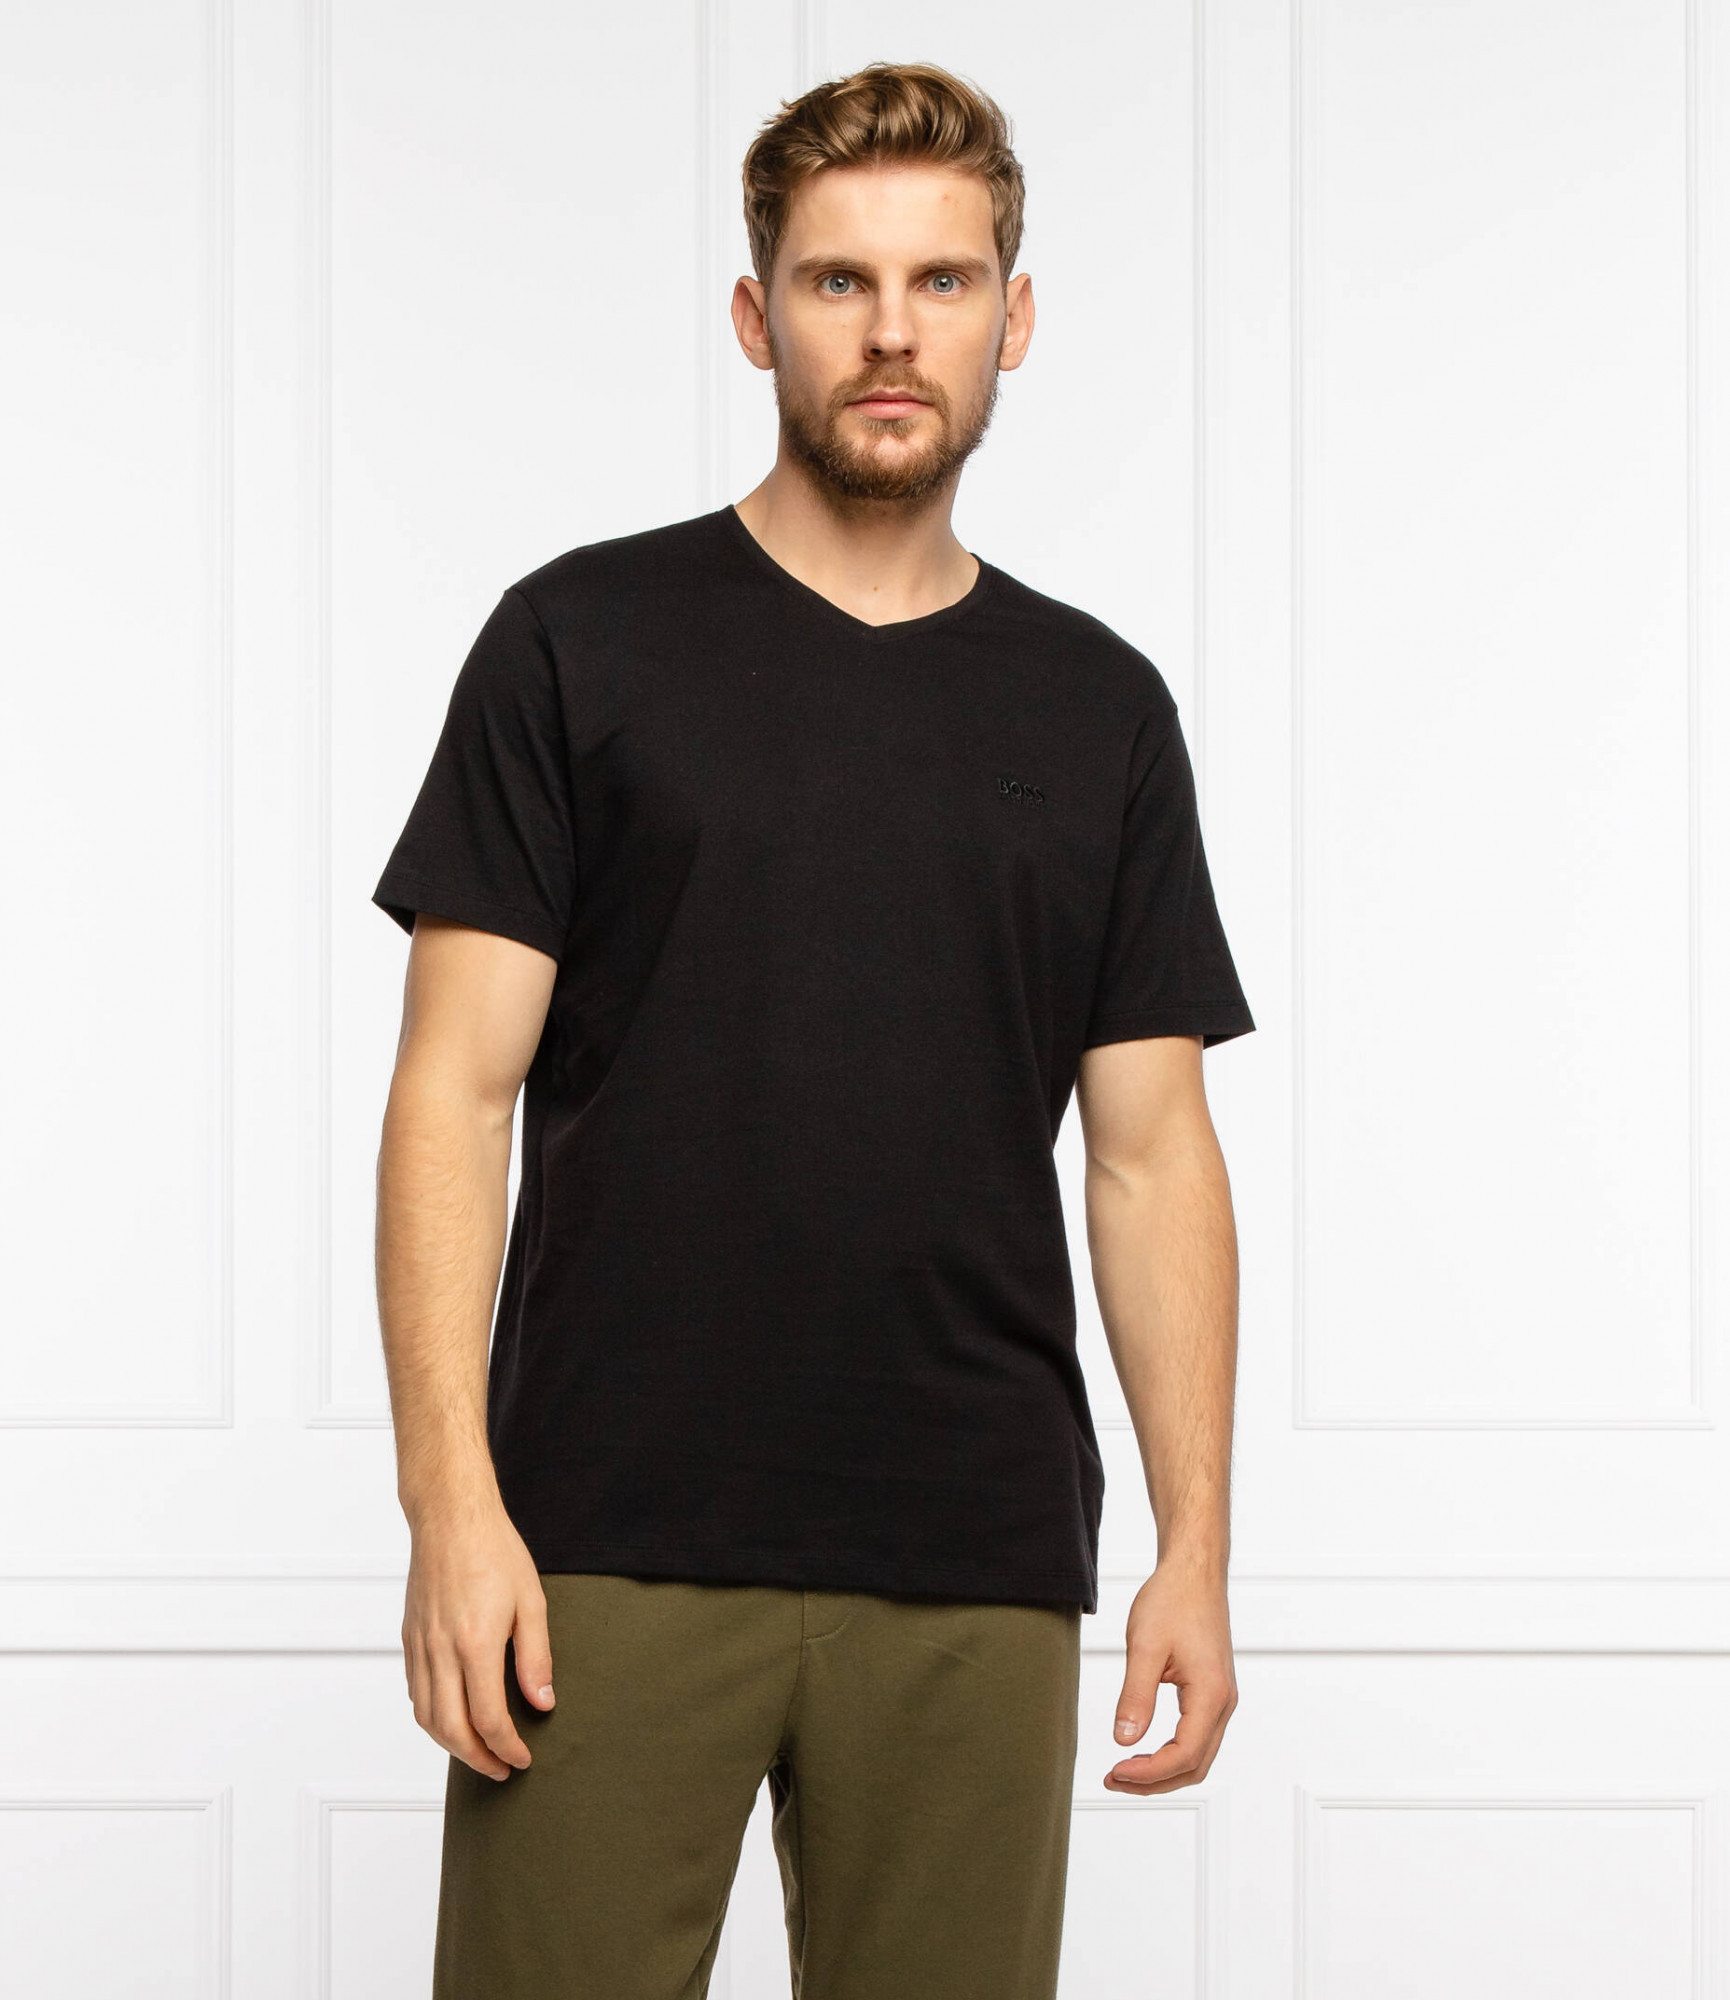 Pánské tričko TShirt černé model 17607484 - Hugo Boss Velikost: M, Barvy: černá